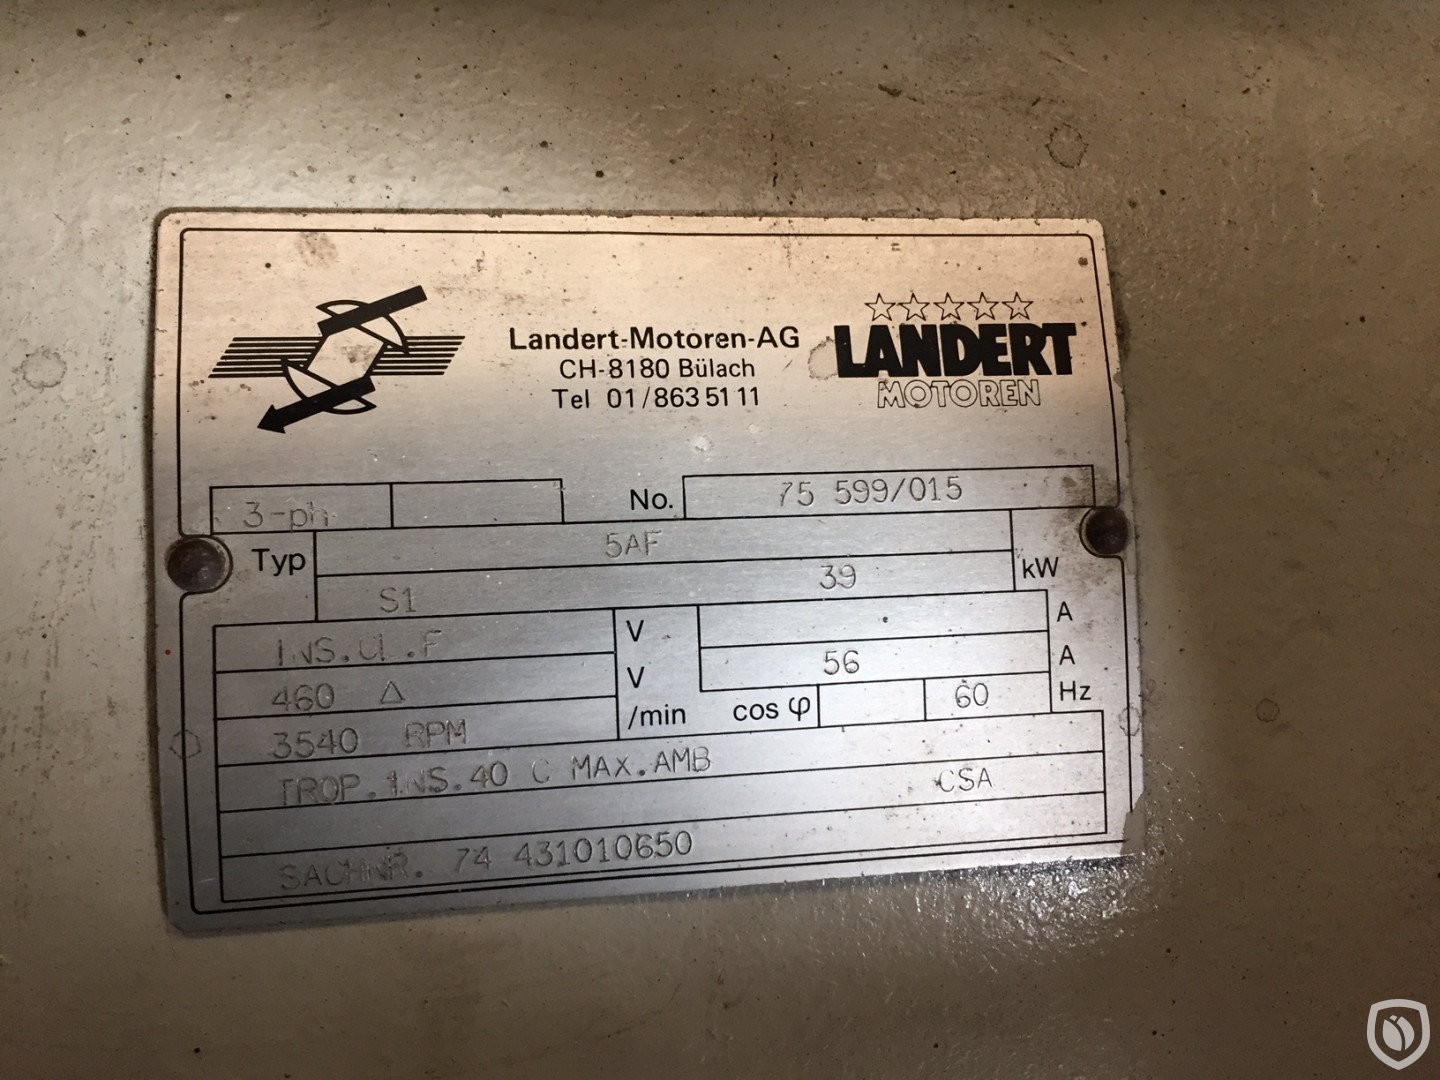 Landert SG5a / S1